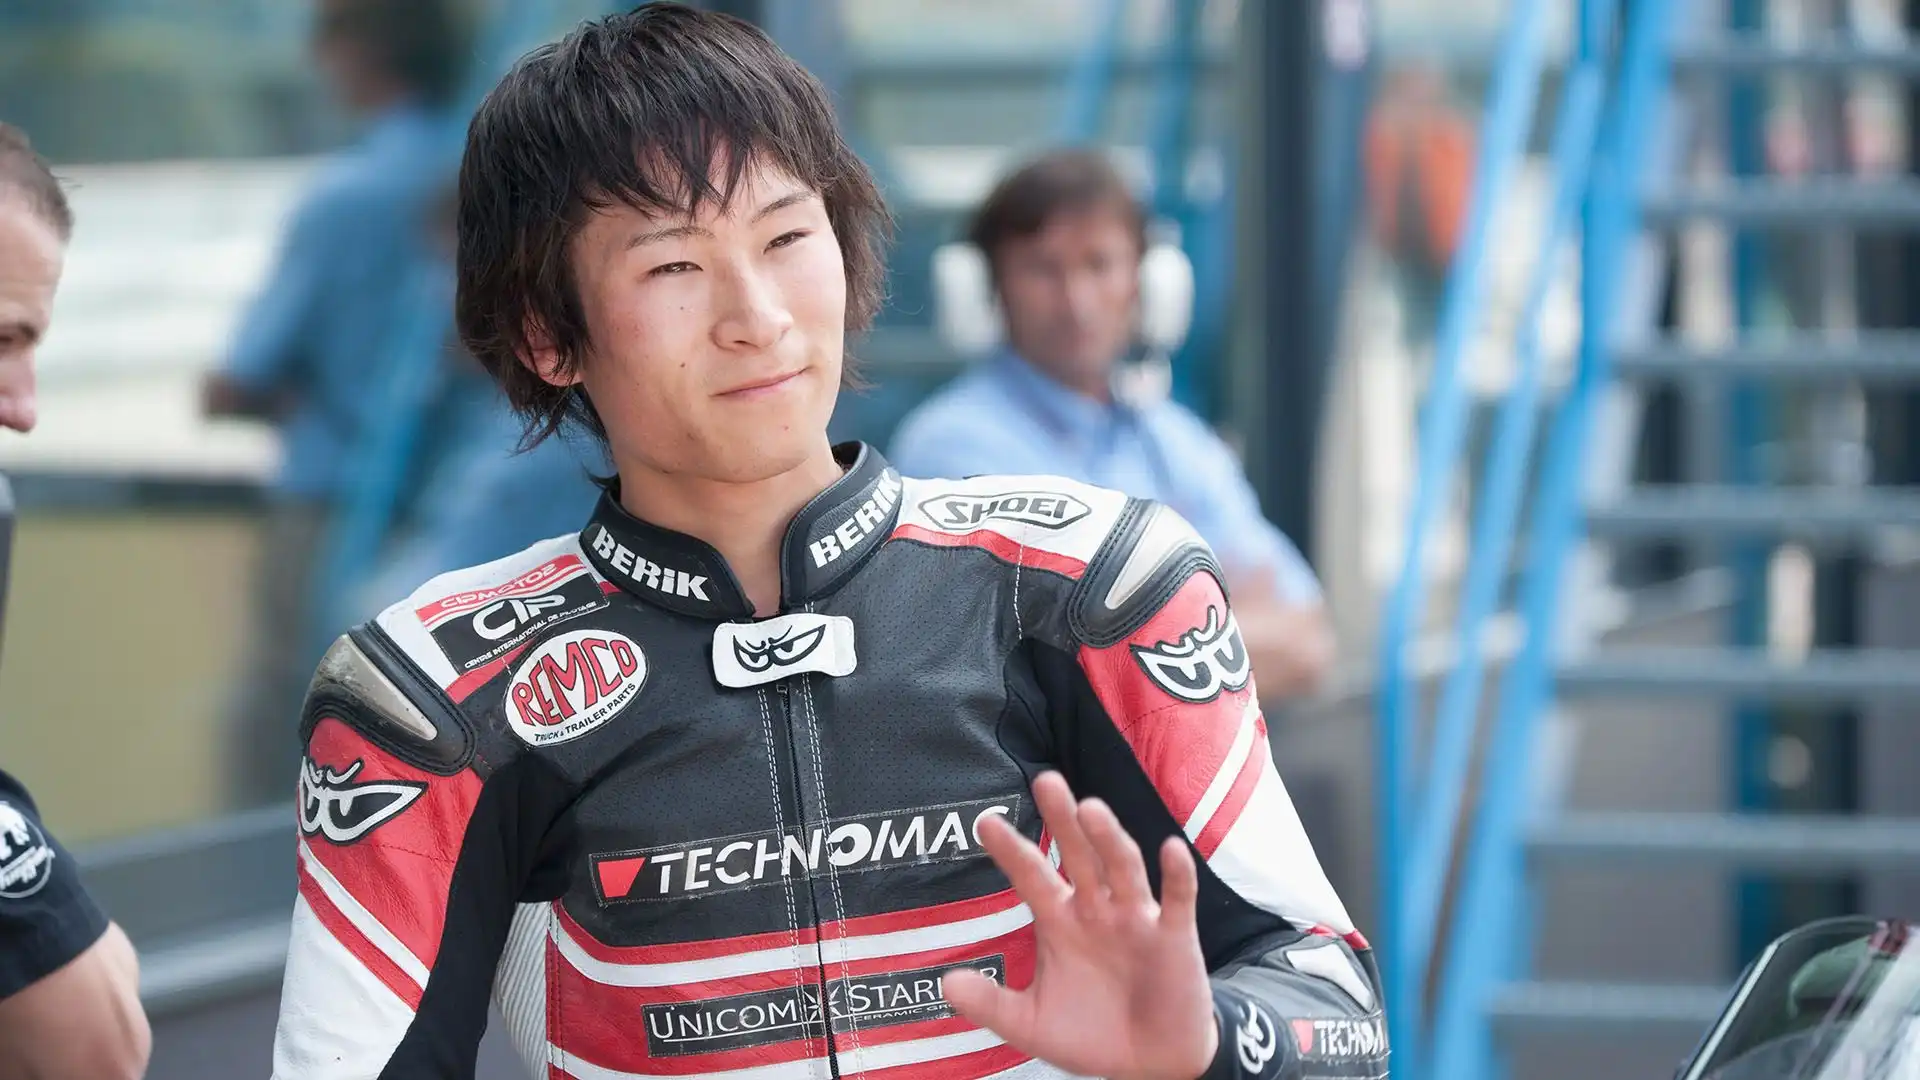 Shōya Tomizawa: sfortunatissimo pilota, scomparso ad appena 19 anni per un incidente avvenuto durante il Gp di San Marino in Moto2 nel 2010. Quell'anno aveva vinto il Gp del Qatar